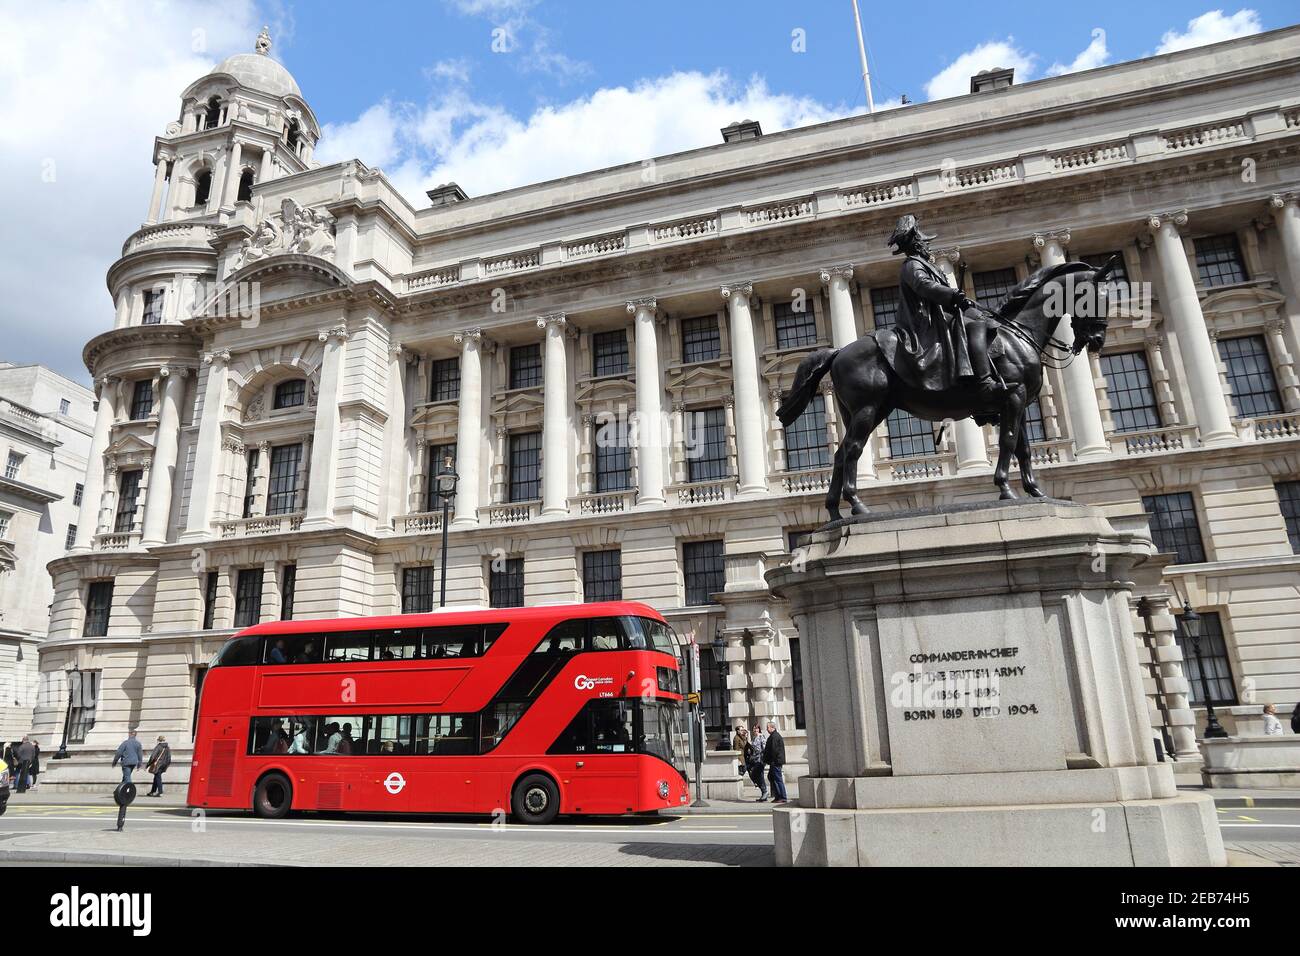 LONDRA, Regno Unito - 23 APRILE 2016: La gente guida il bus della città a Whitehall a Londra, Regno Unito. I trasporti per Londra (TFL) effettuano 8,000 autobus su 673 linee. Foto Stock